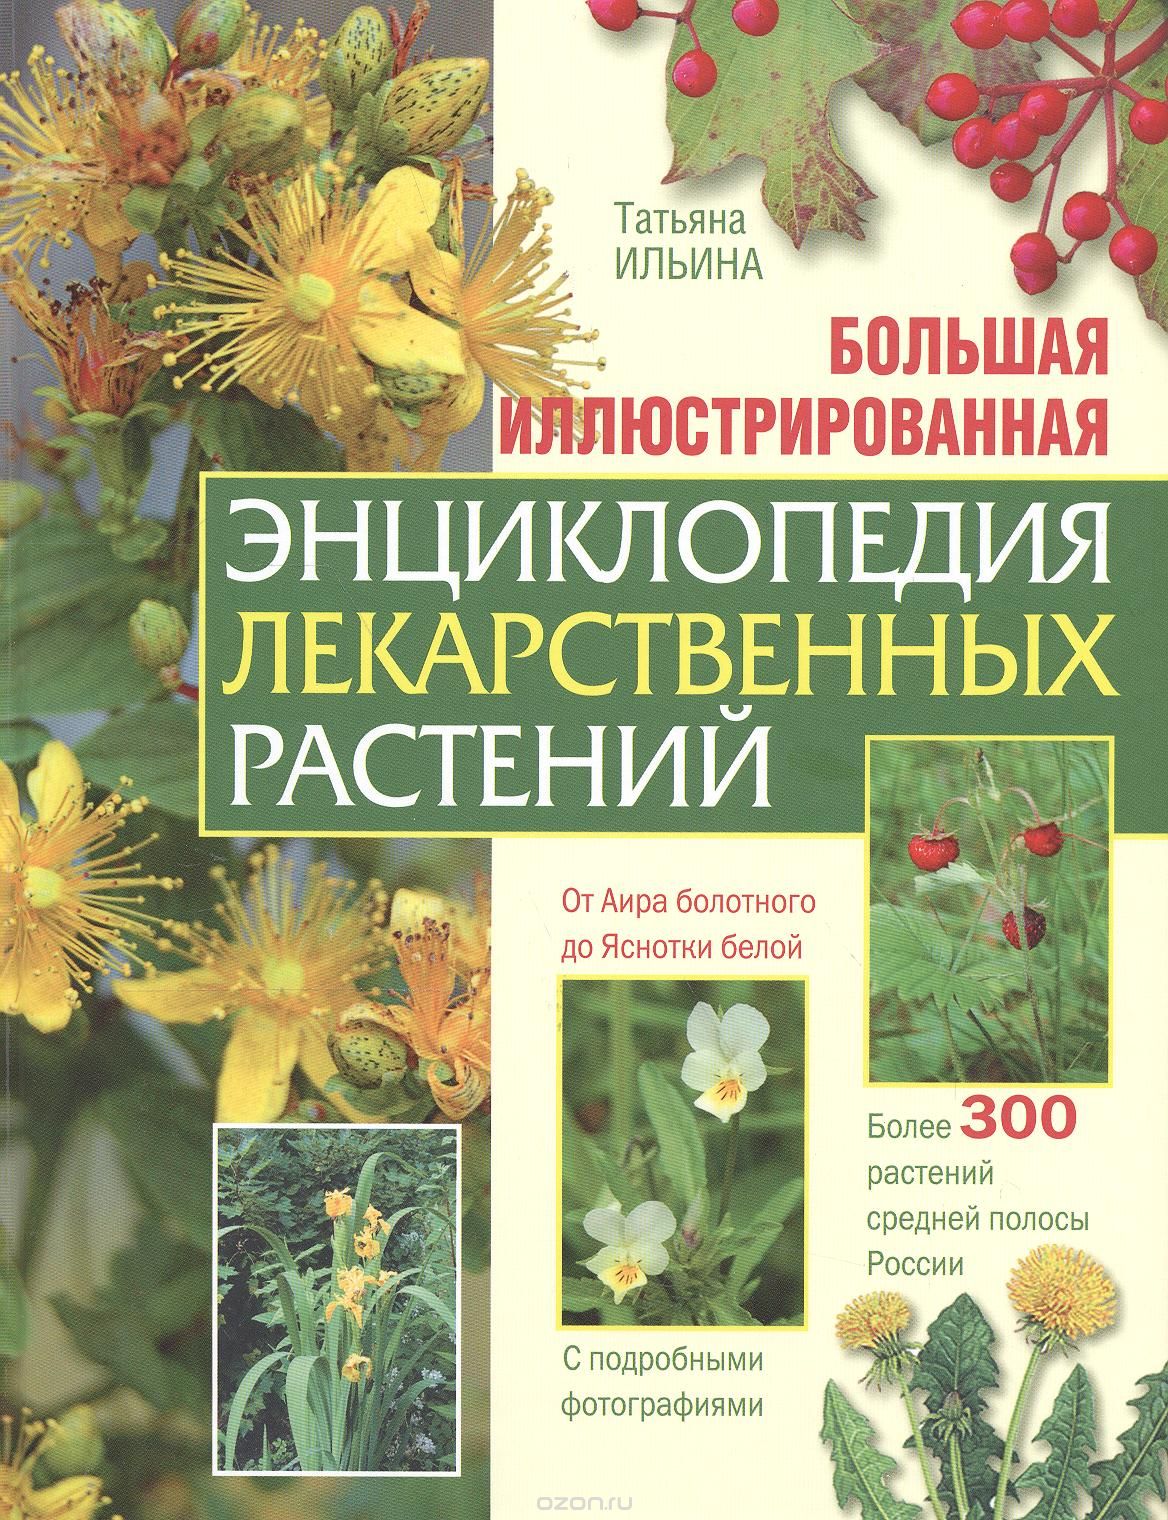 Большая иллюстрированная энциклопедия лекарственных растений, Т. А. Ильина